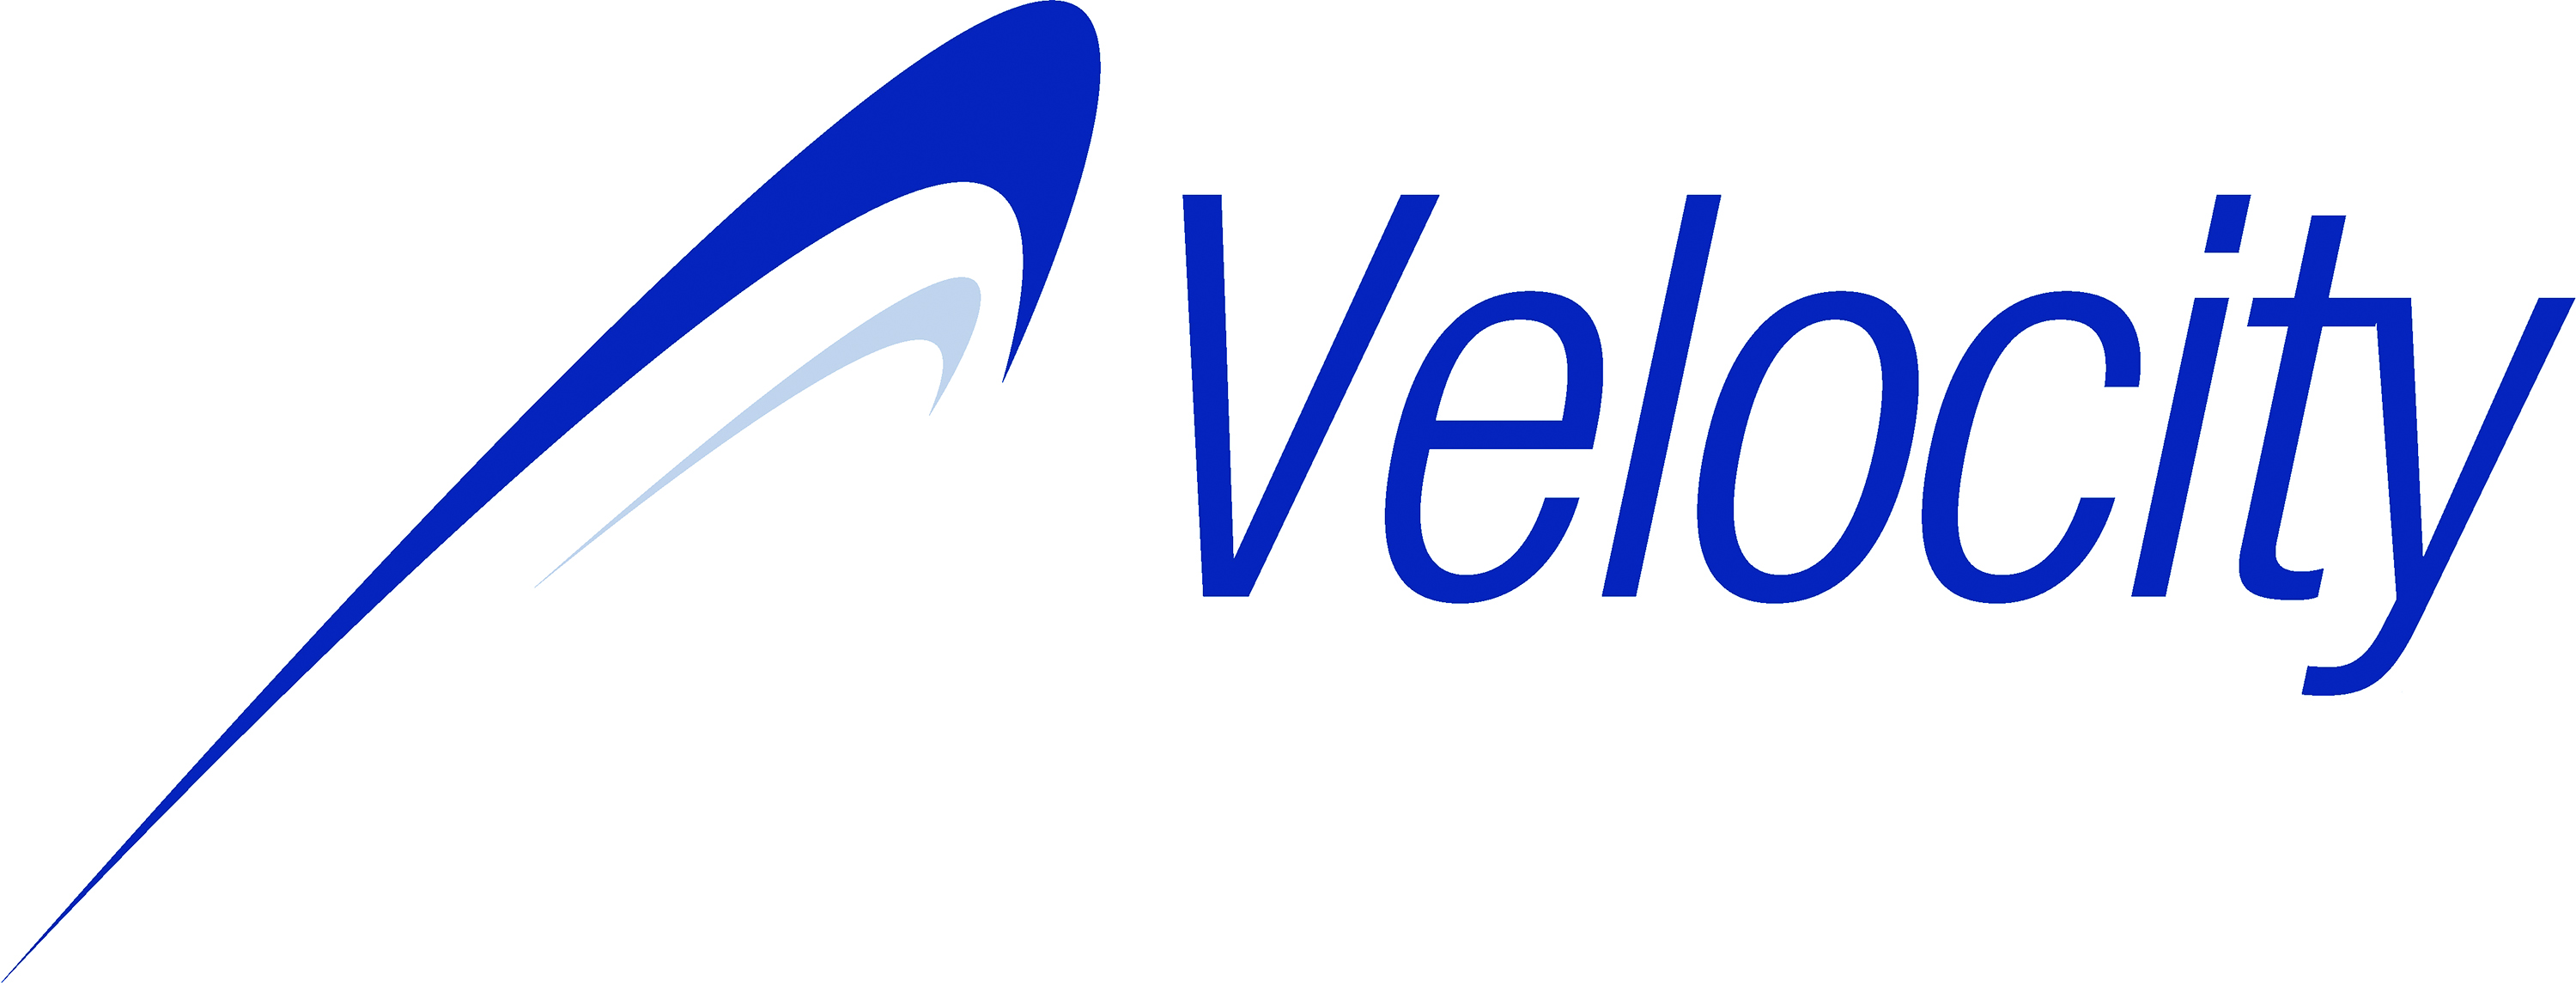 Velocity Technology Limited